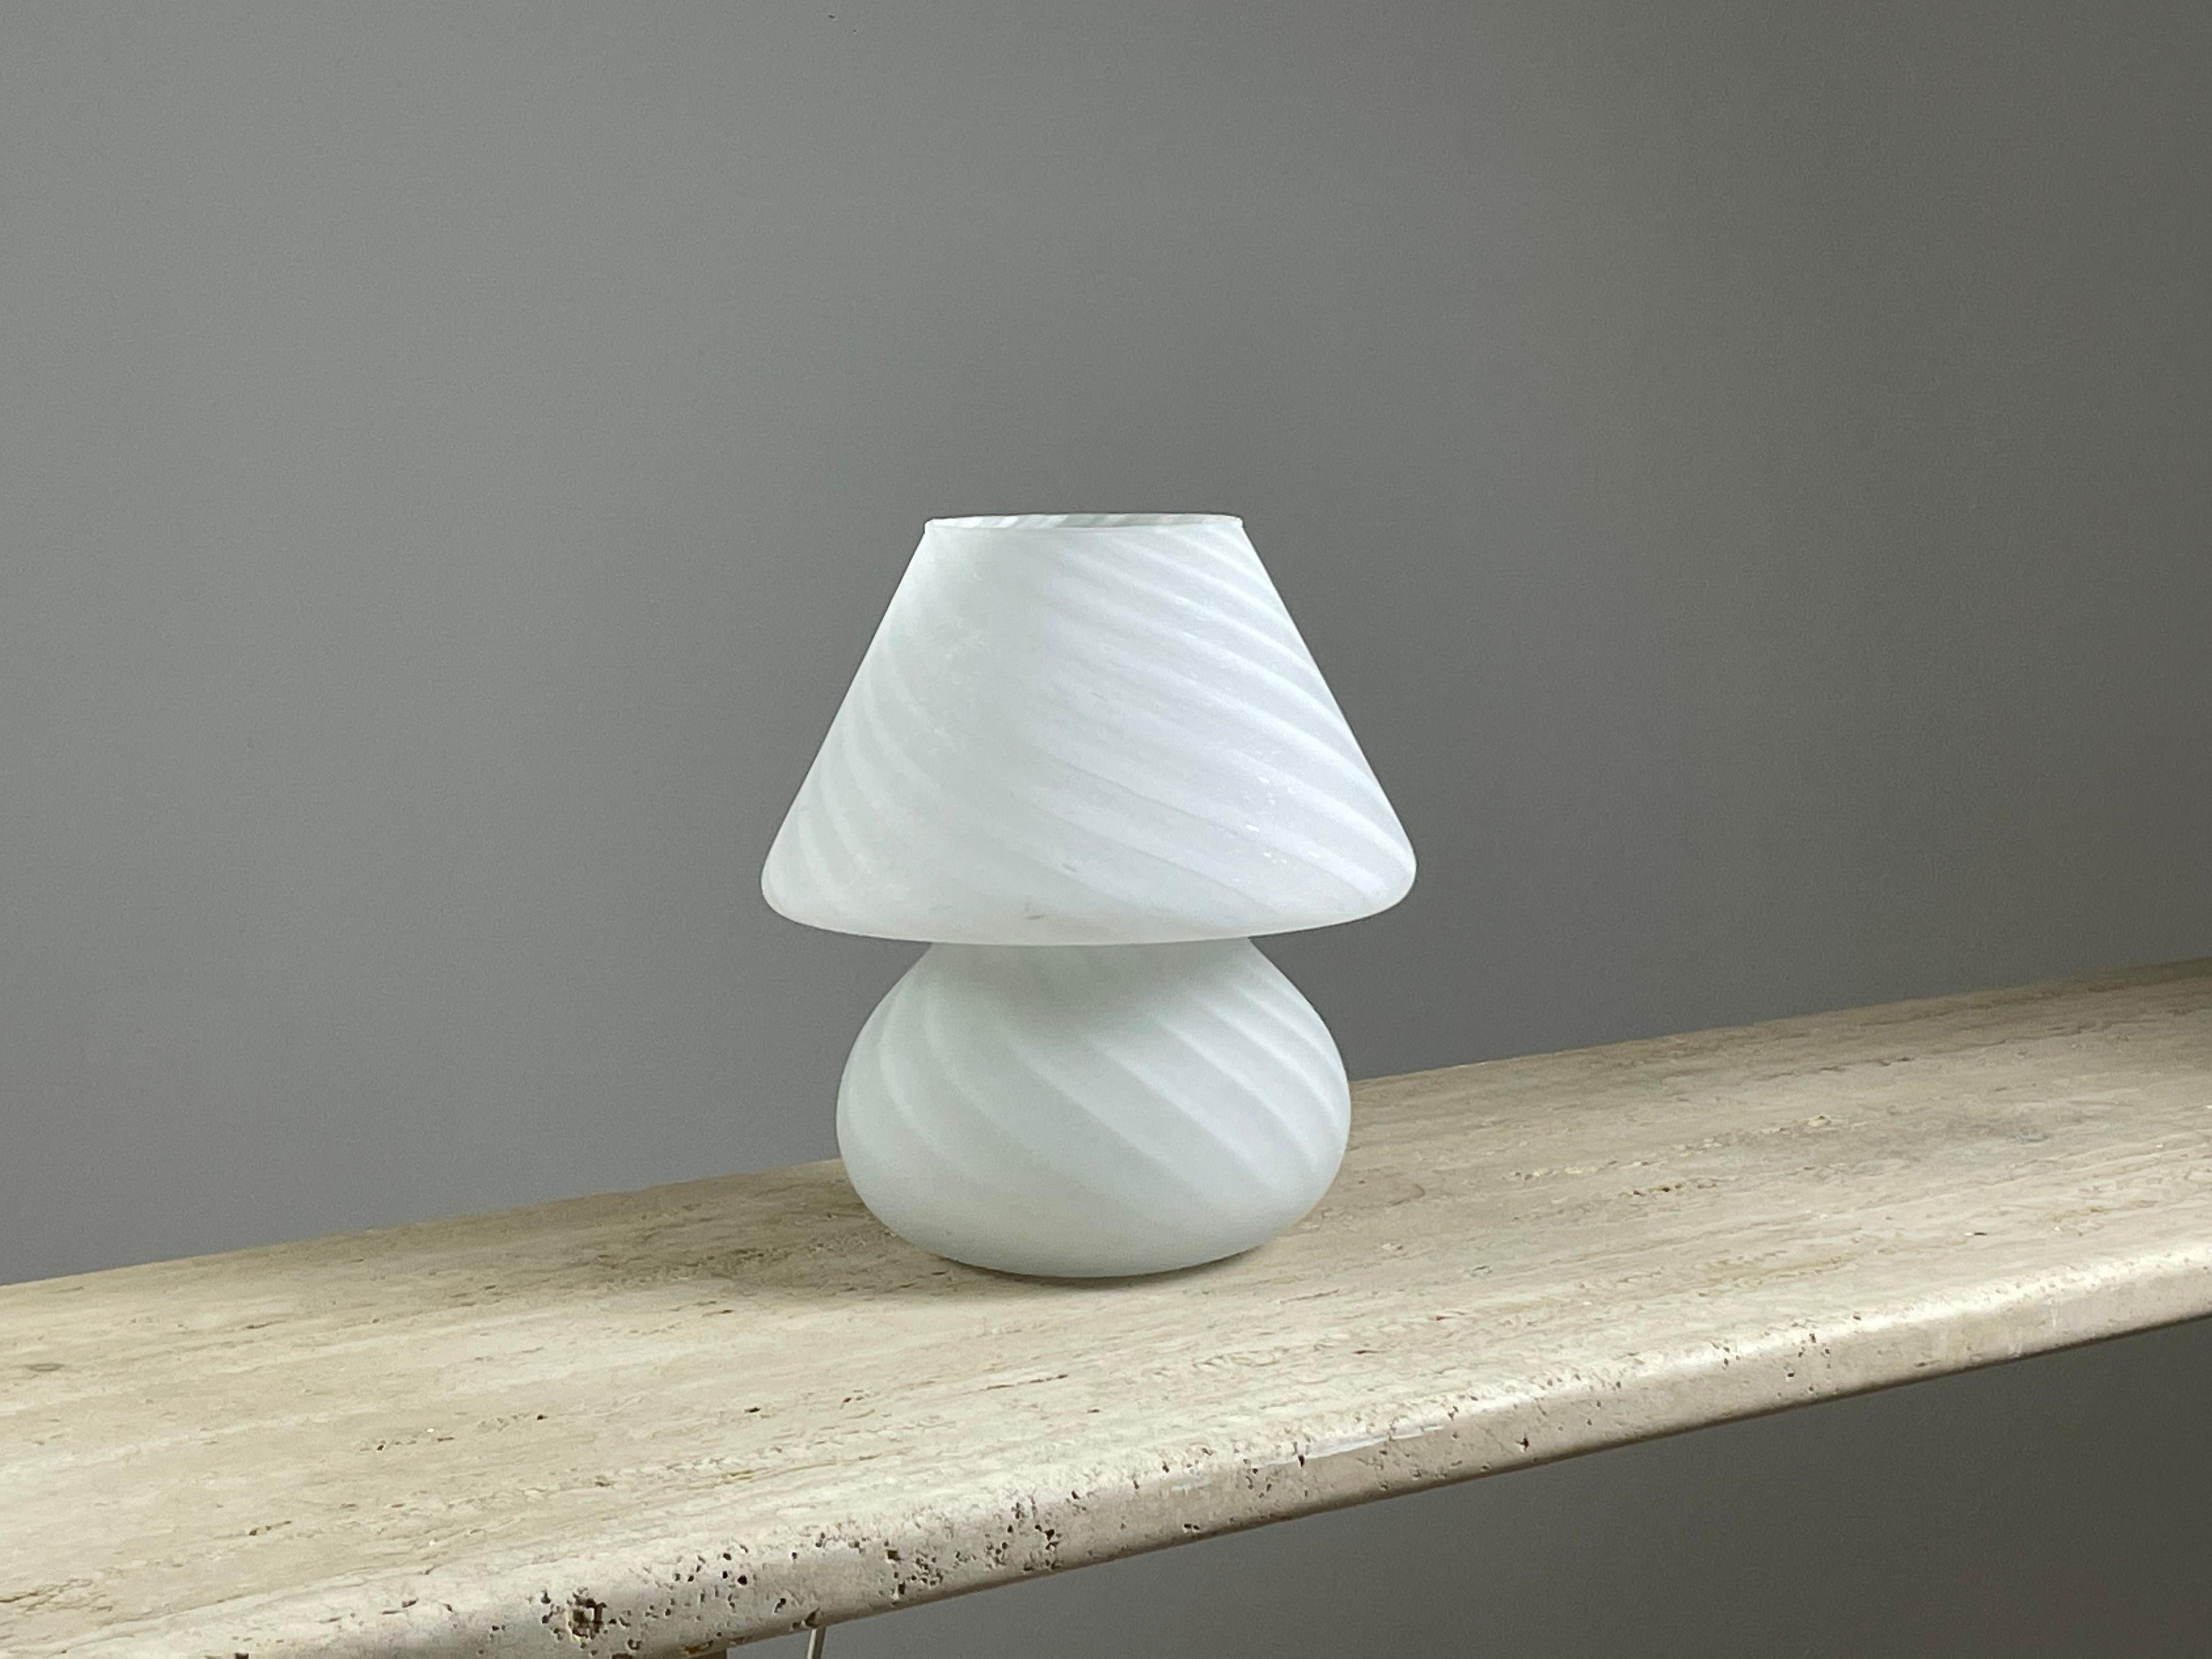 Lampe de table en forme de champignon en verre de Murano datant des années 1970. Très belle lumière et élégance pour cette lampe de grande qualité. Bon état général (photos) Dimensions : h27 cm diamètre 24 cm.